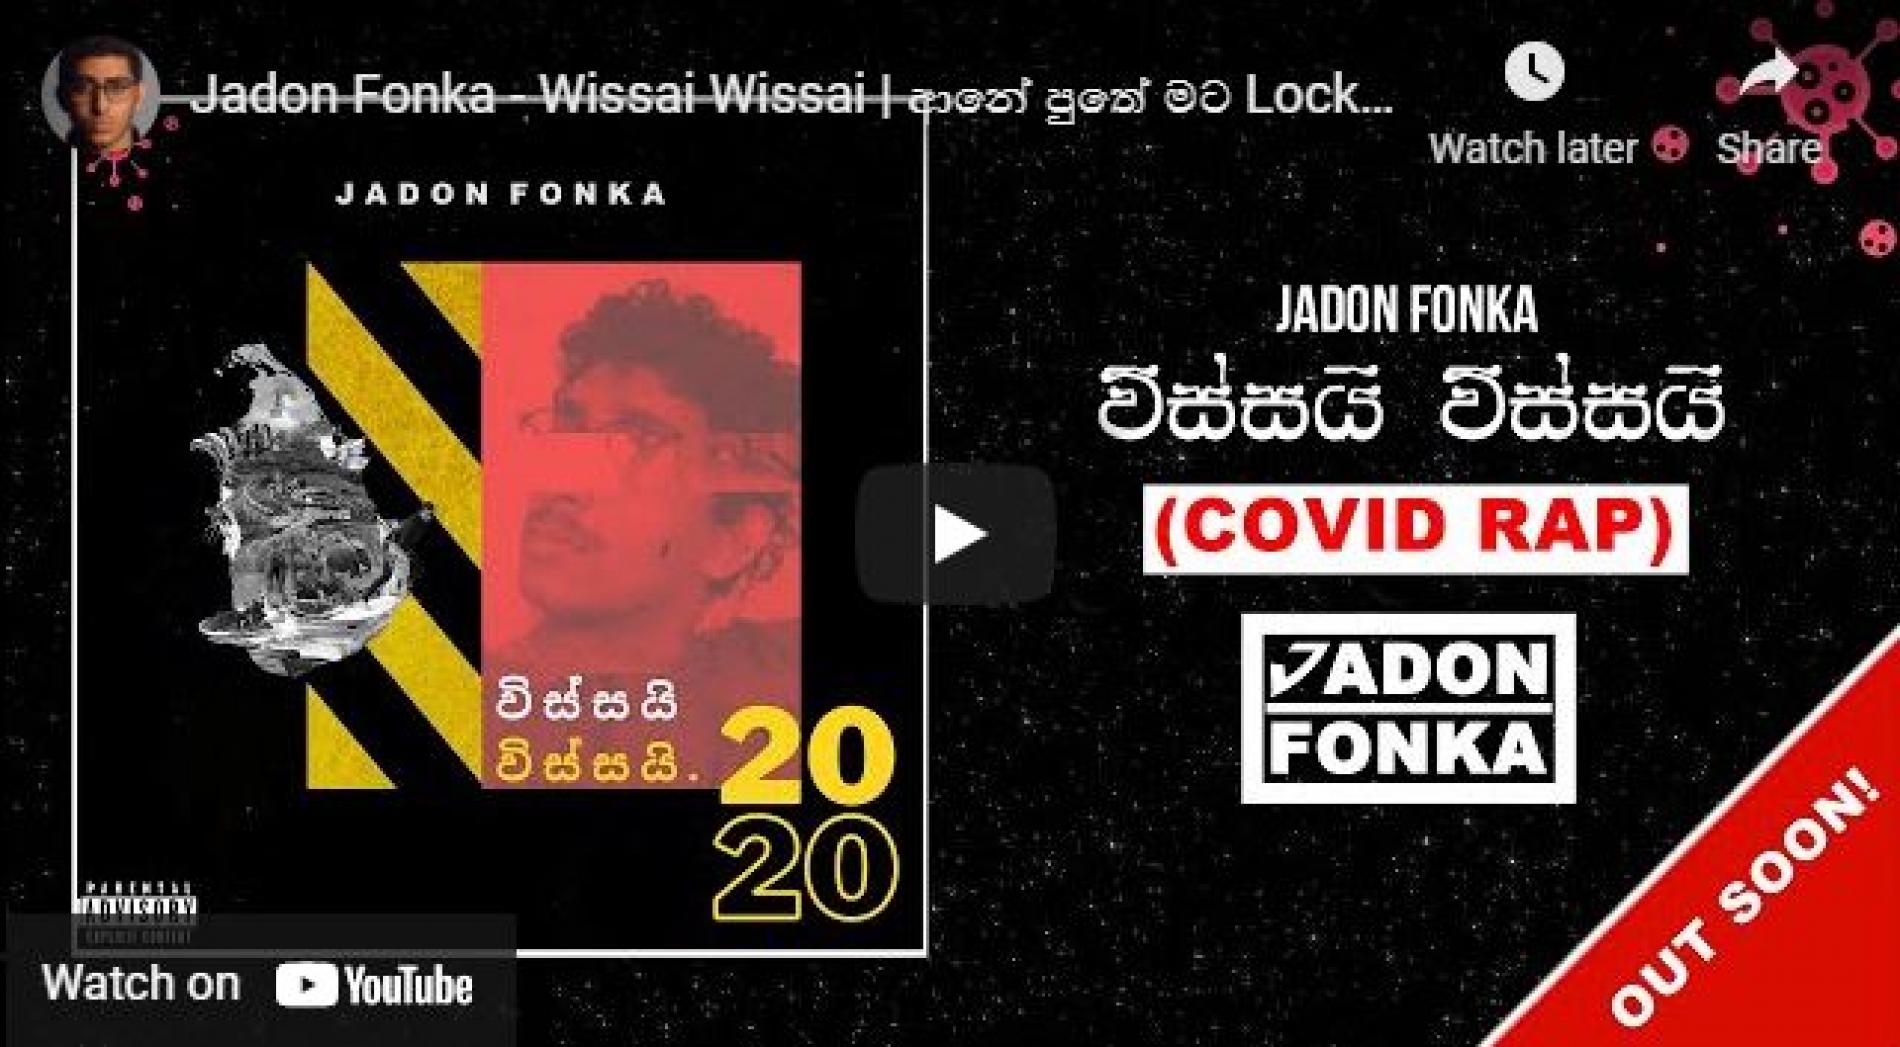 New Music : Jadon Fonka – Wissai Wissai | ආනේ පුතේ මට Lockdown එපා වෙලා ආයේ